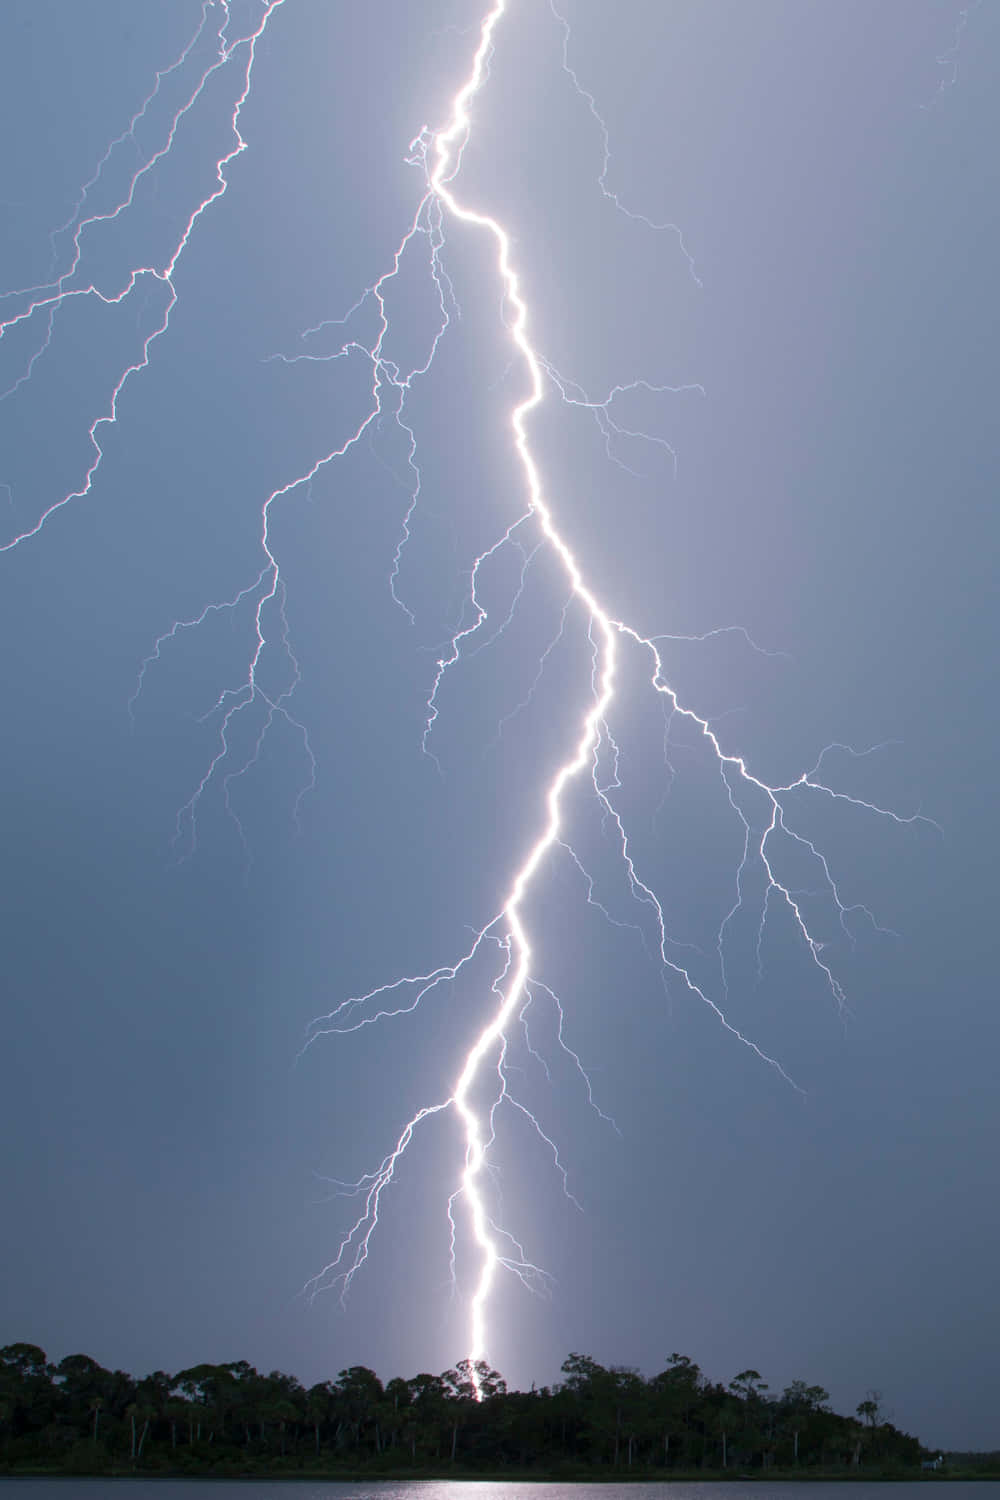 A lightning strike sparks alongside a dark sky